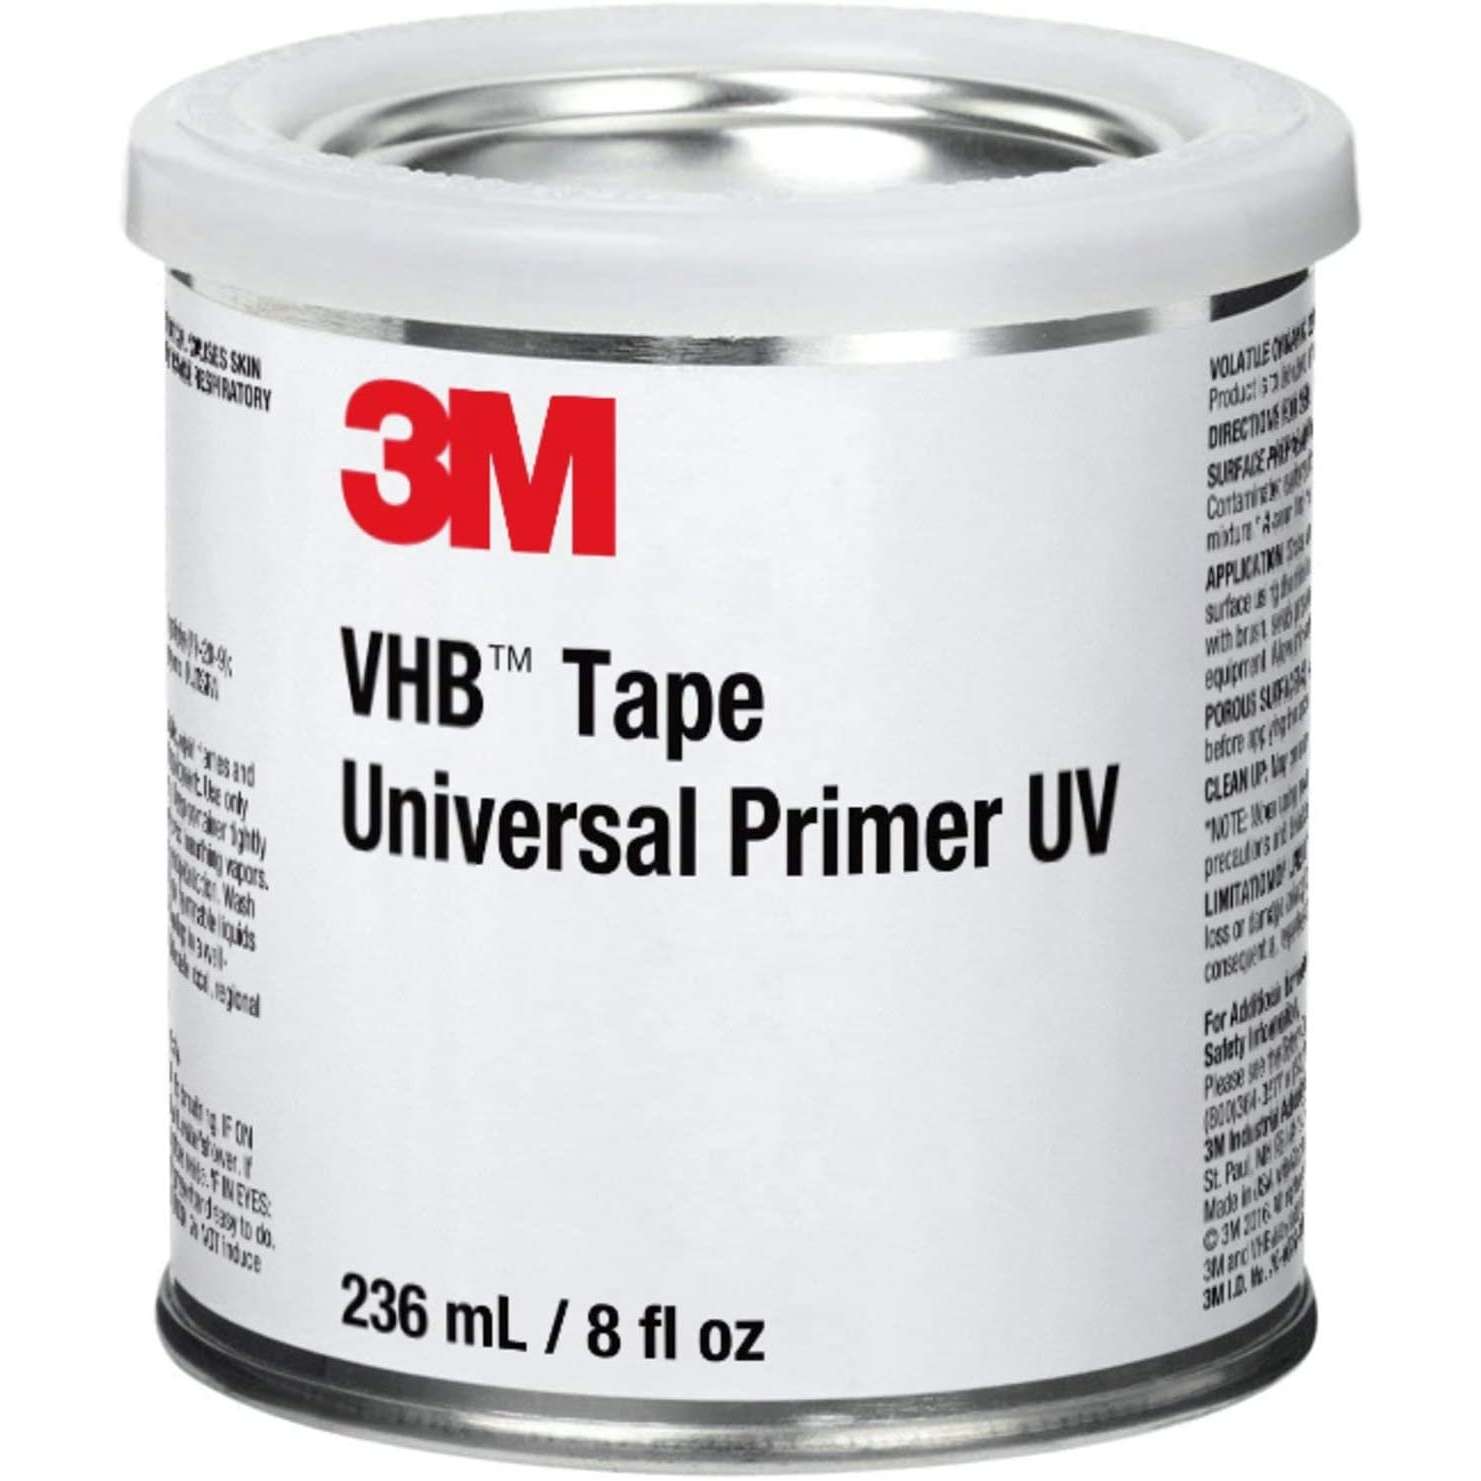 Праймеры адгезии. Праймер 3m 946 мл. VHB Tape Universal primer UV 3m, 946мл, 7100107033. Грунтовка 3m праймер 94. 3м 94 грунтовка праймер.